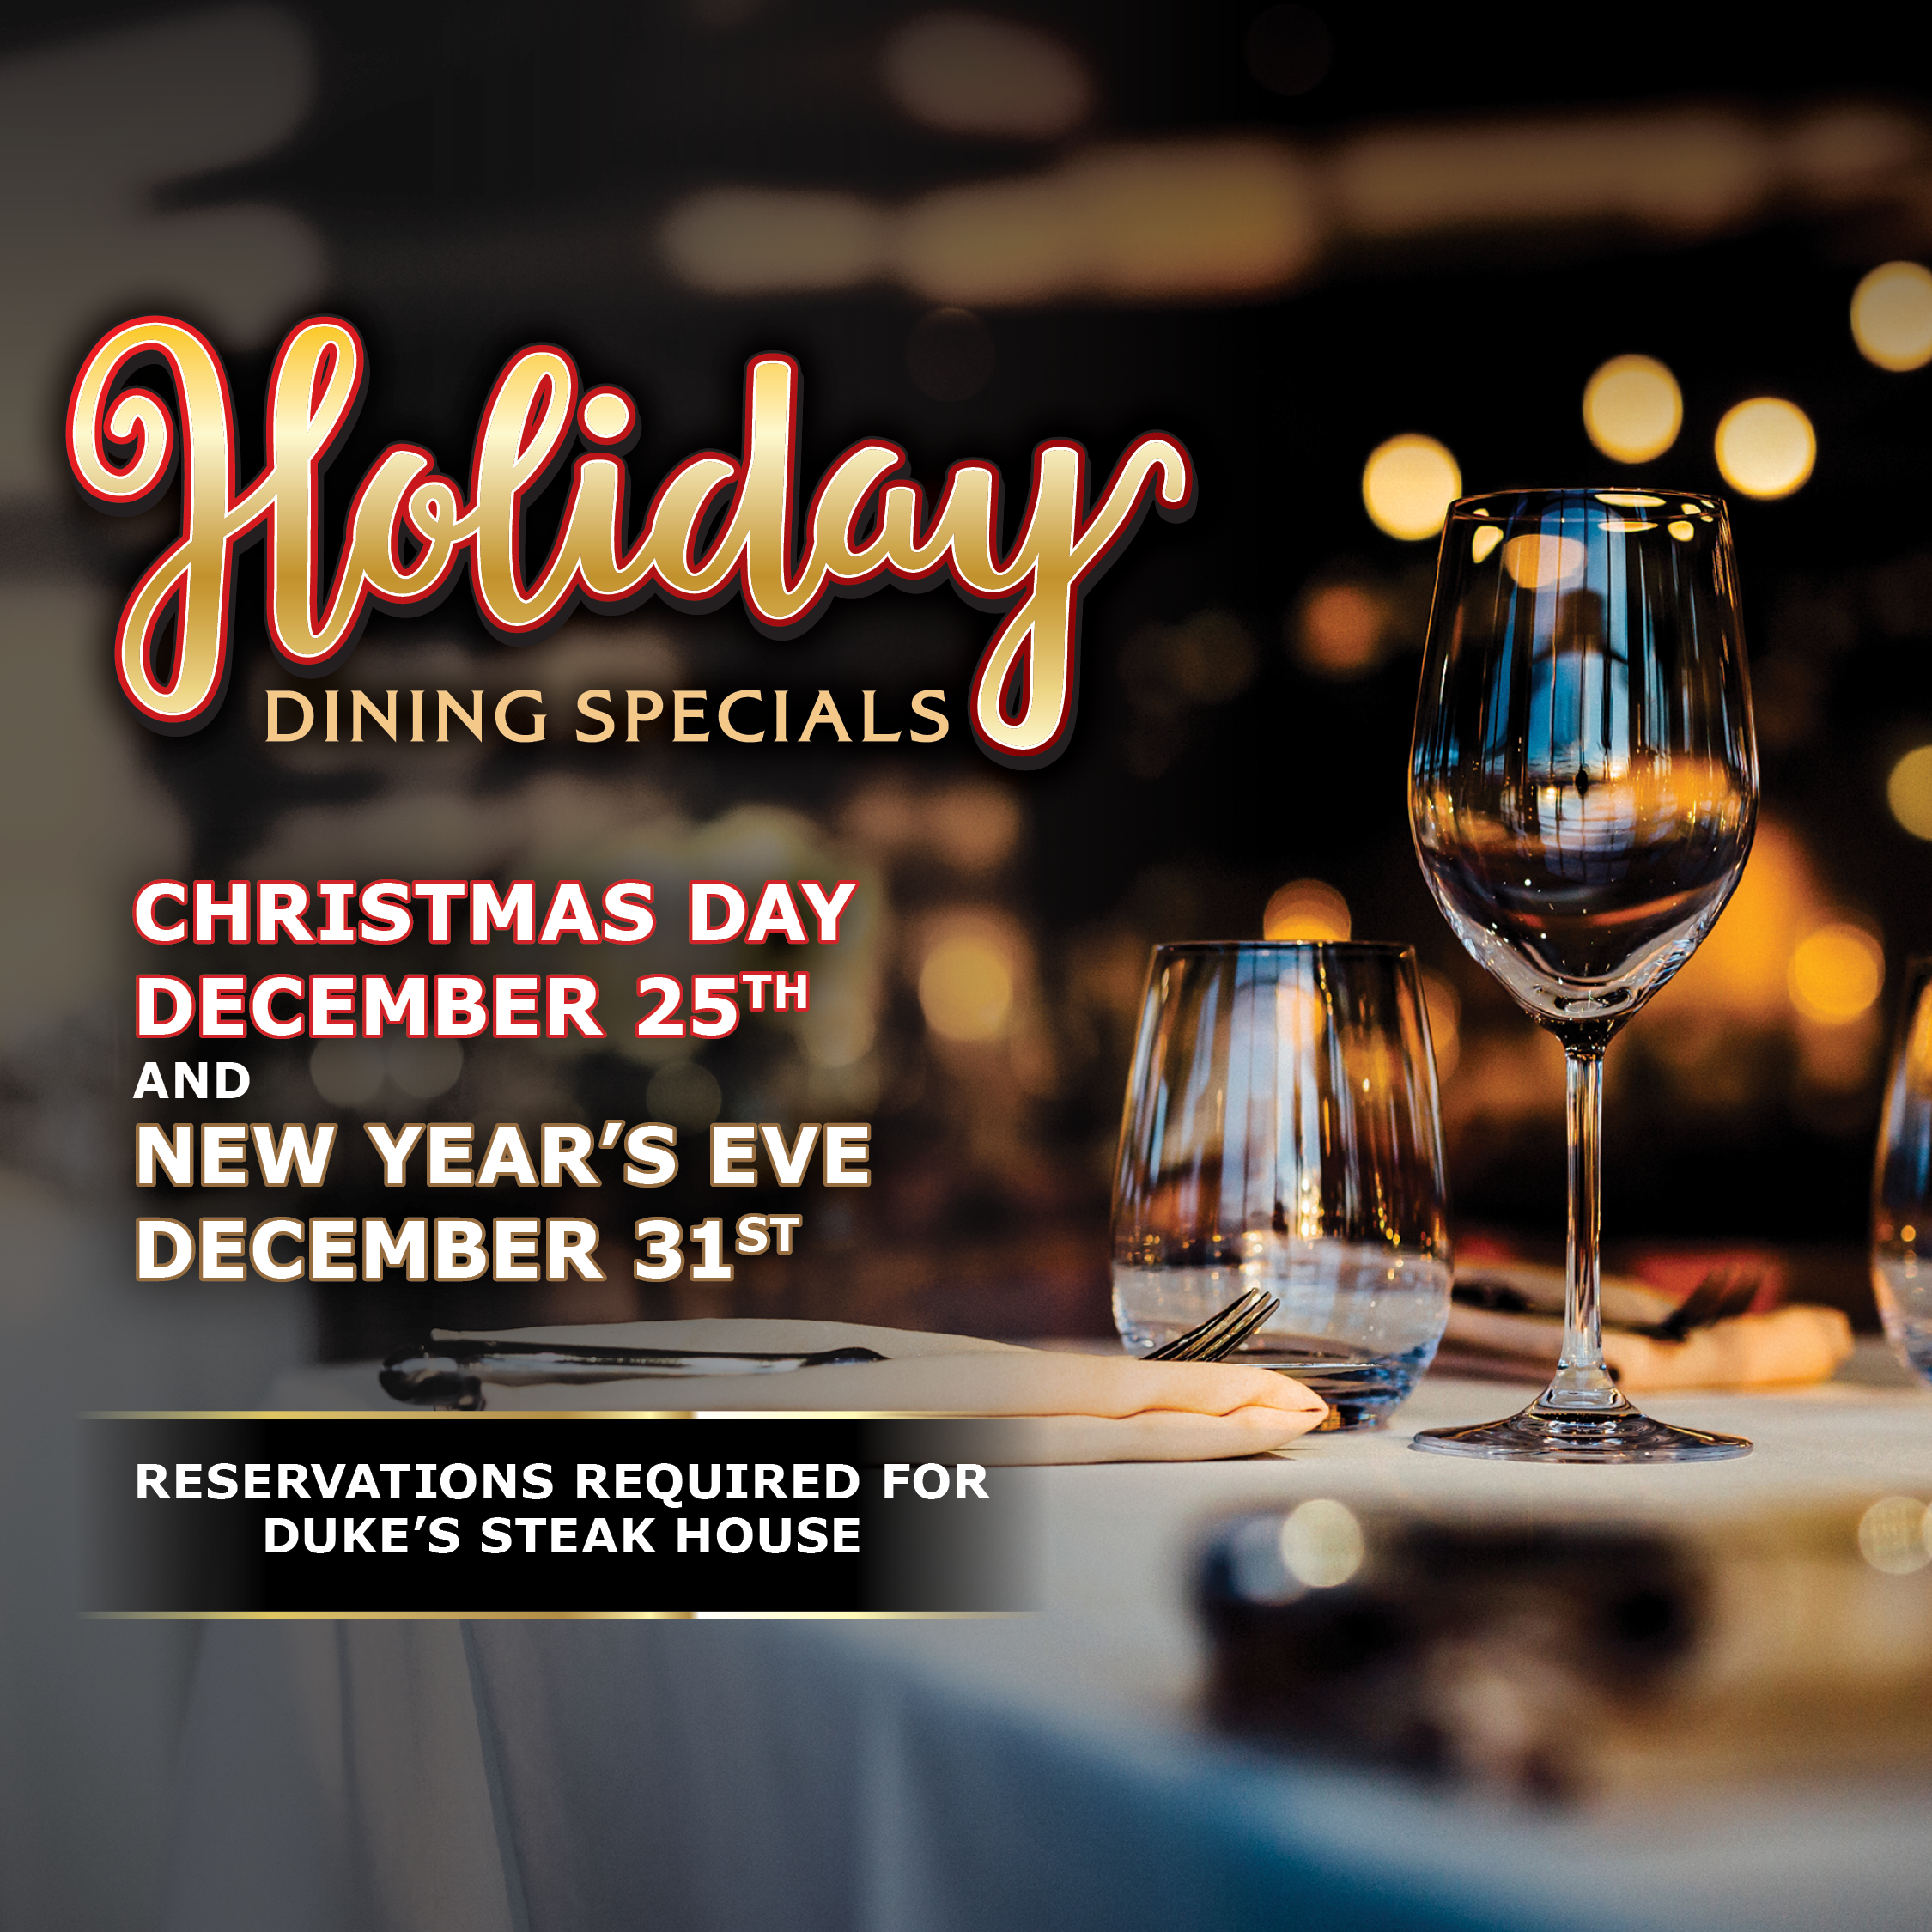 holiday dining specials at legends bay casino